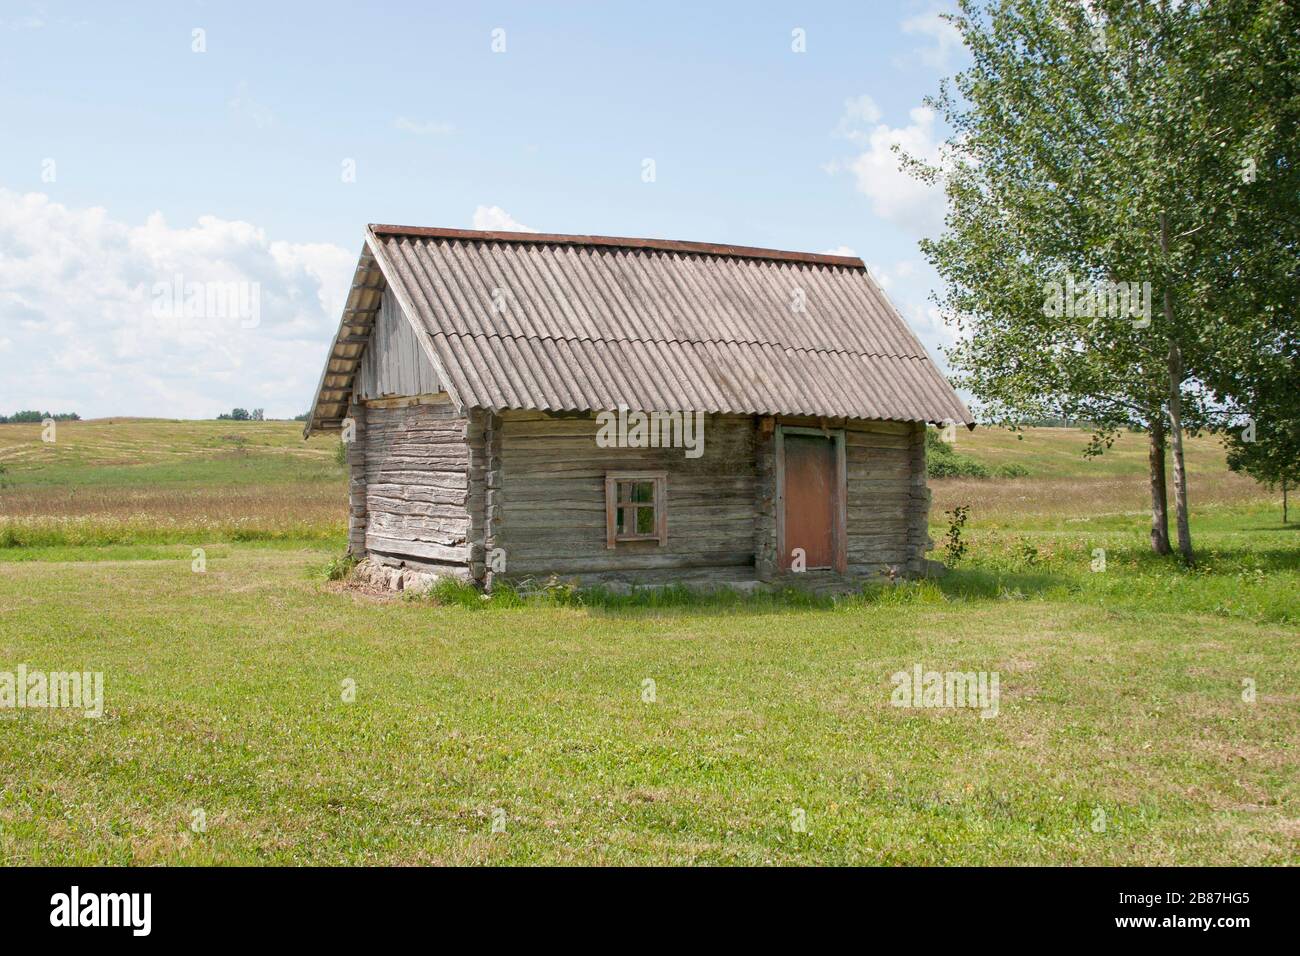 petite petite vieille cabane en bois raster dans le champ central près de bouleau Banque D'Images